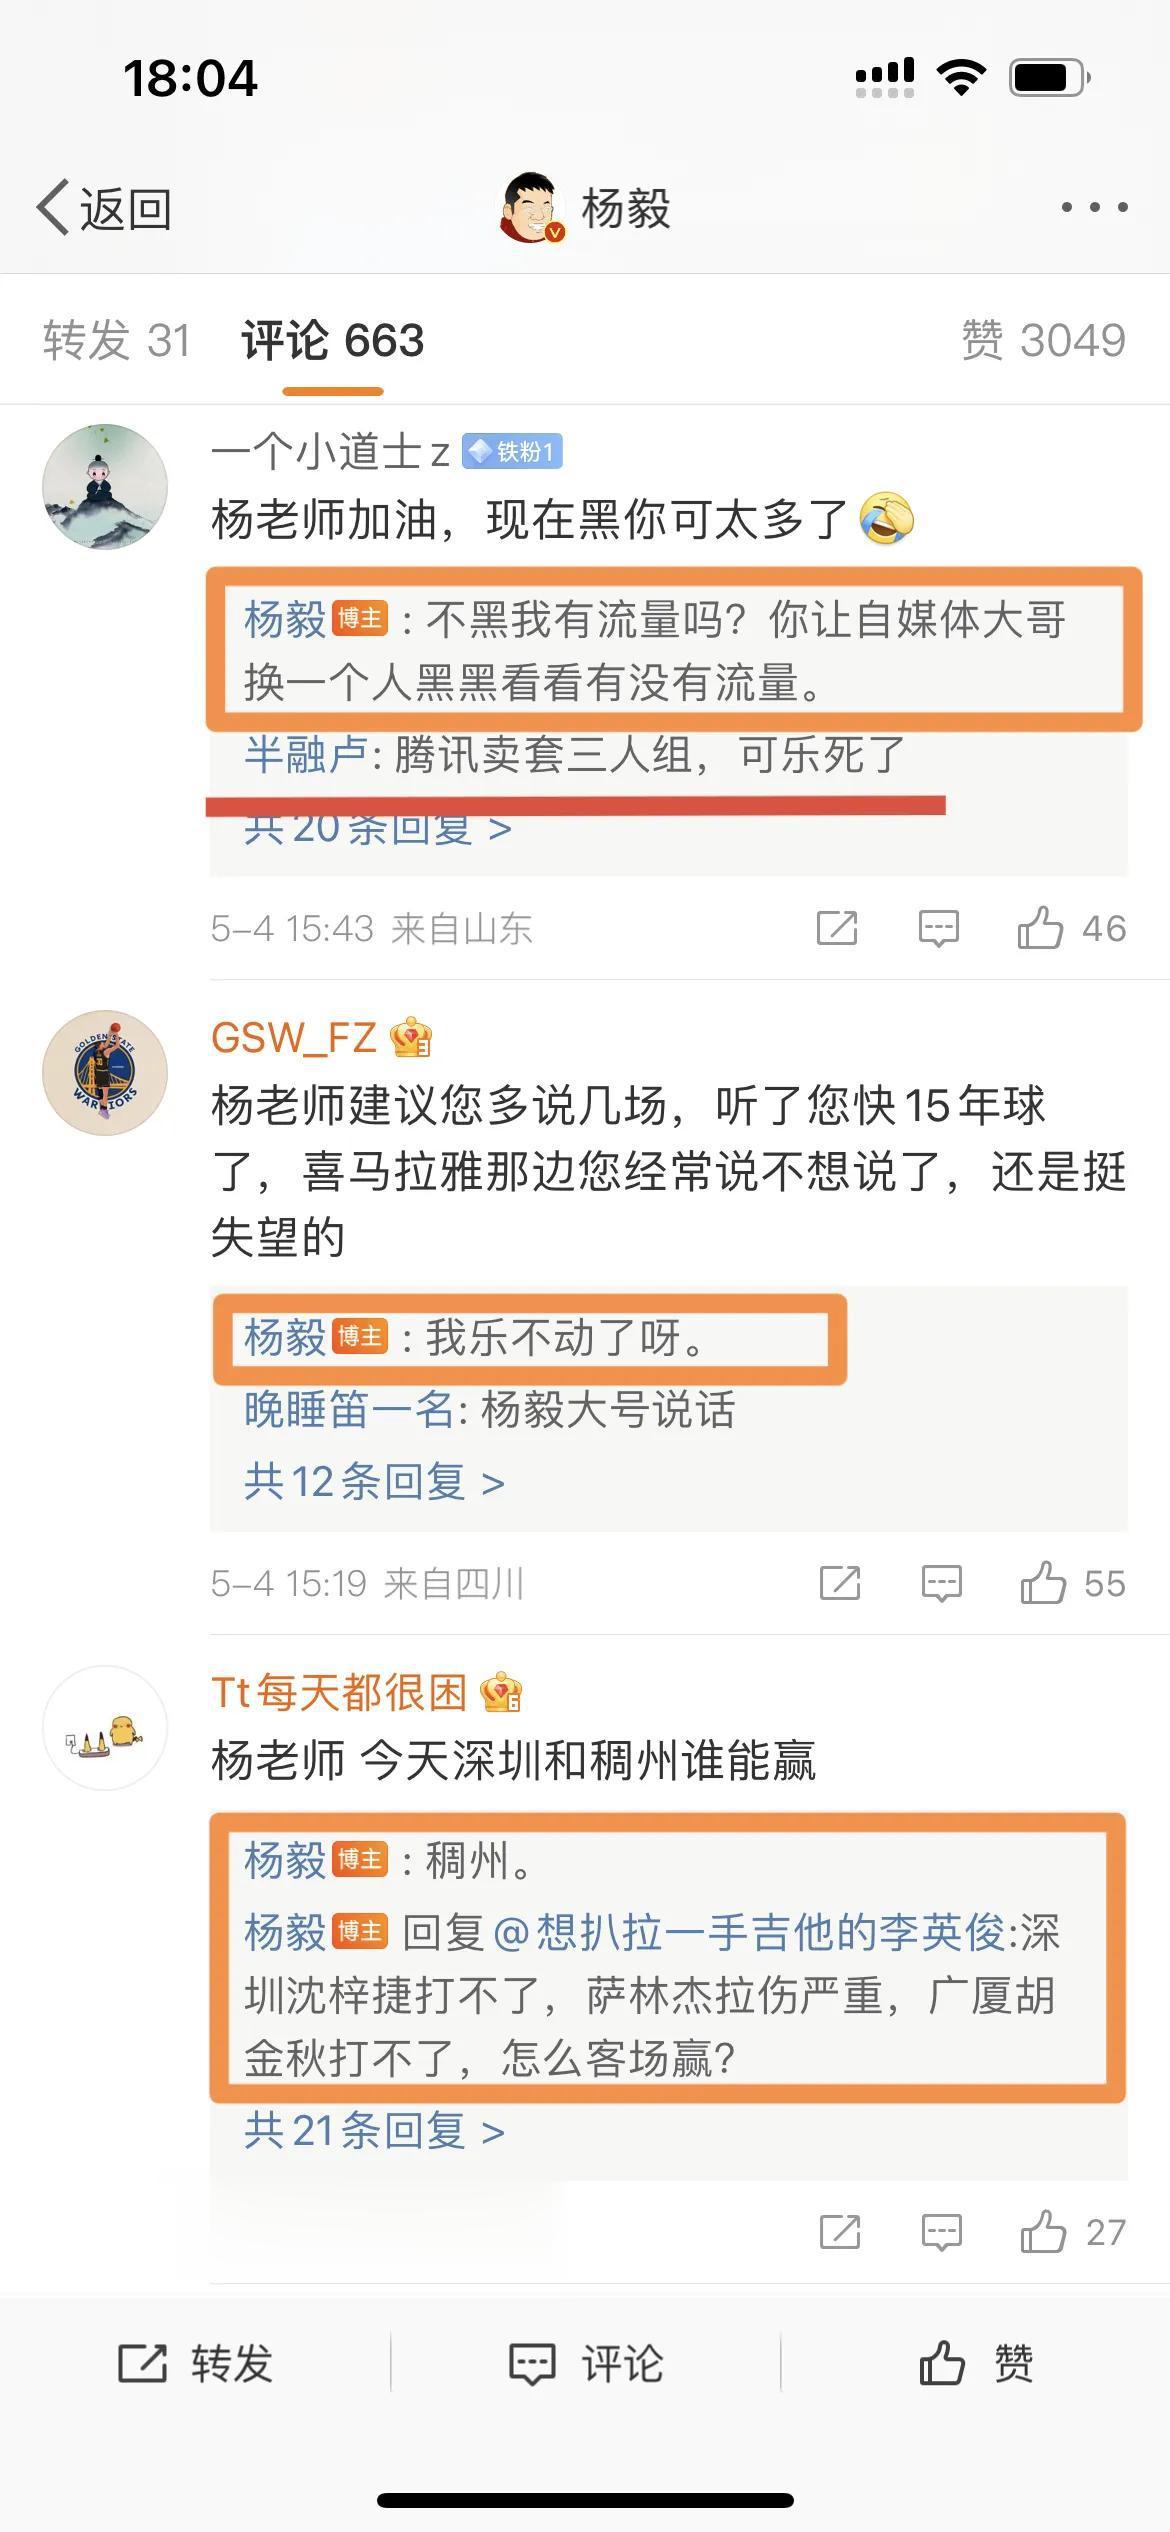 著名篮球评论员杨毅：不黑我有流量吗？你让自媒体大哥换一个人黑看看有没有流量！

(2)